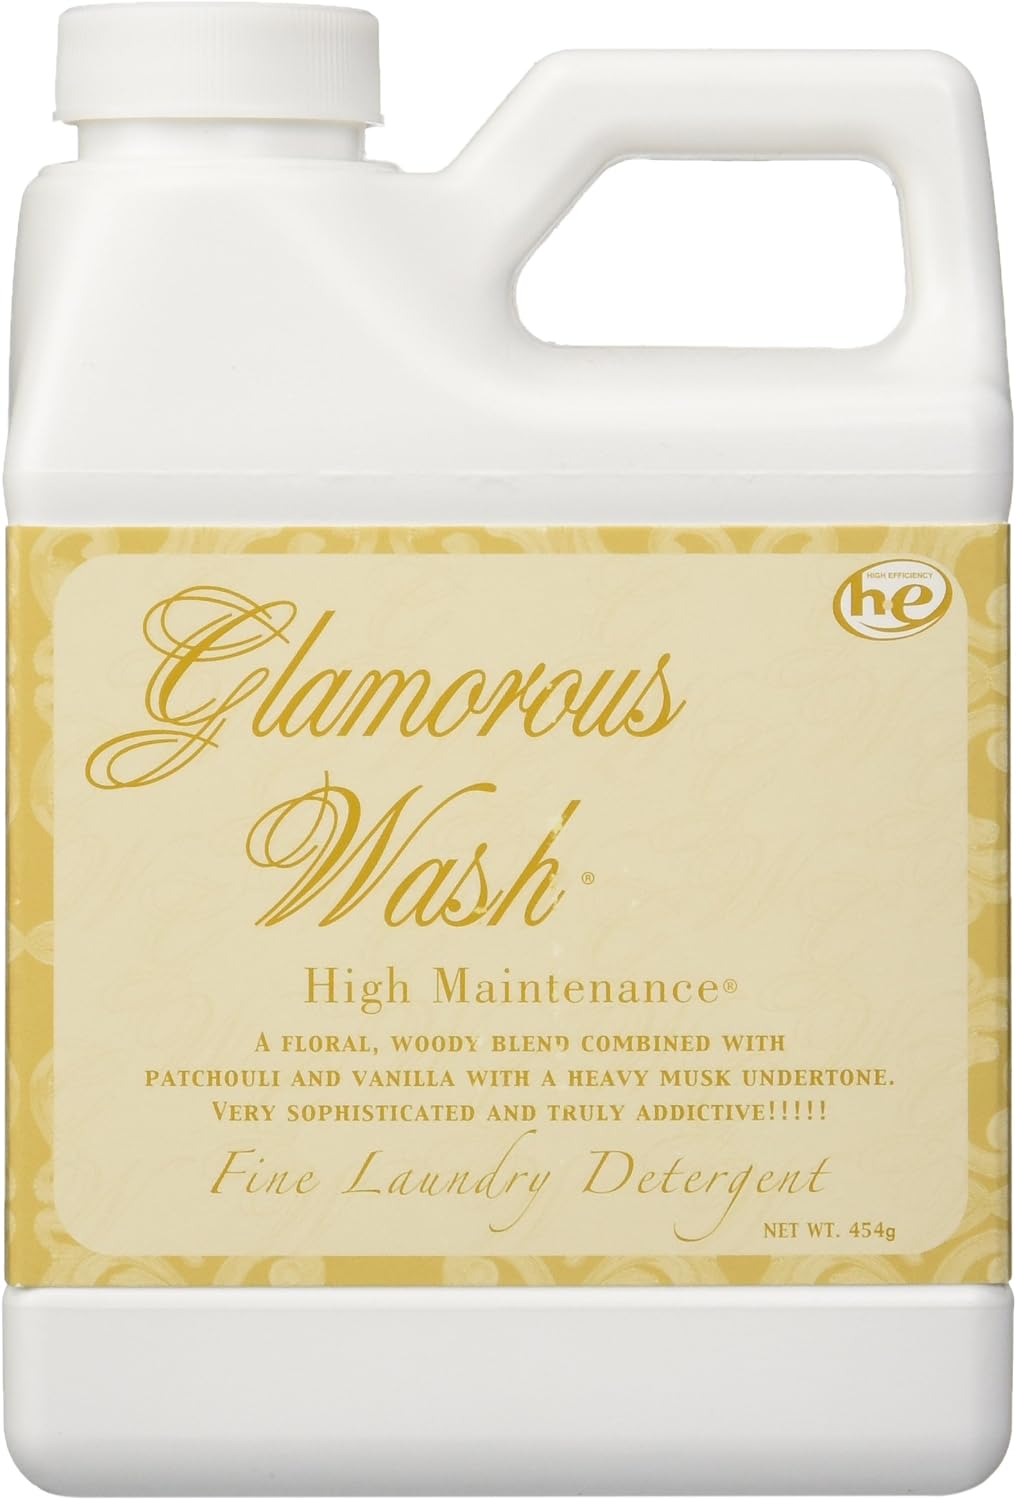 Tyler Glamorous Wash Fine Laundry Detergent 16 oz